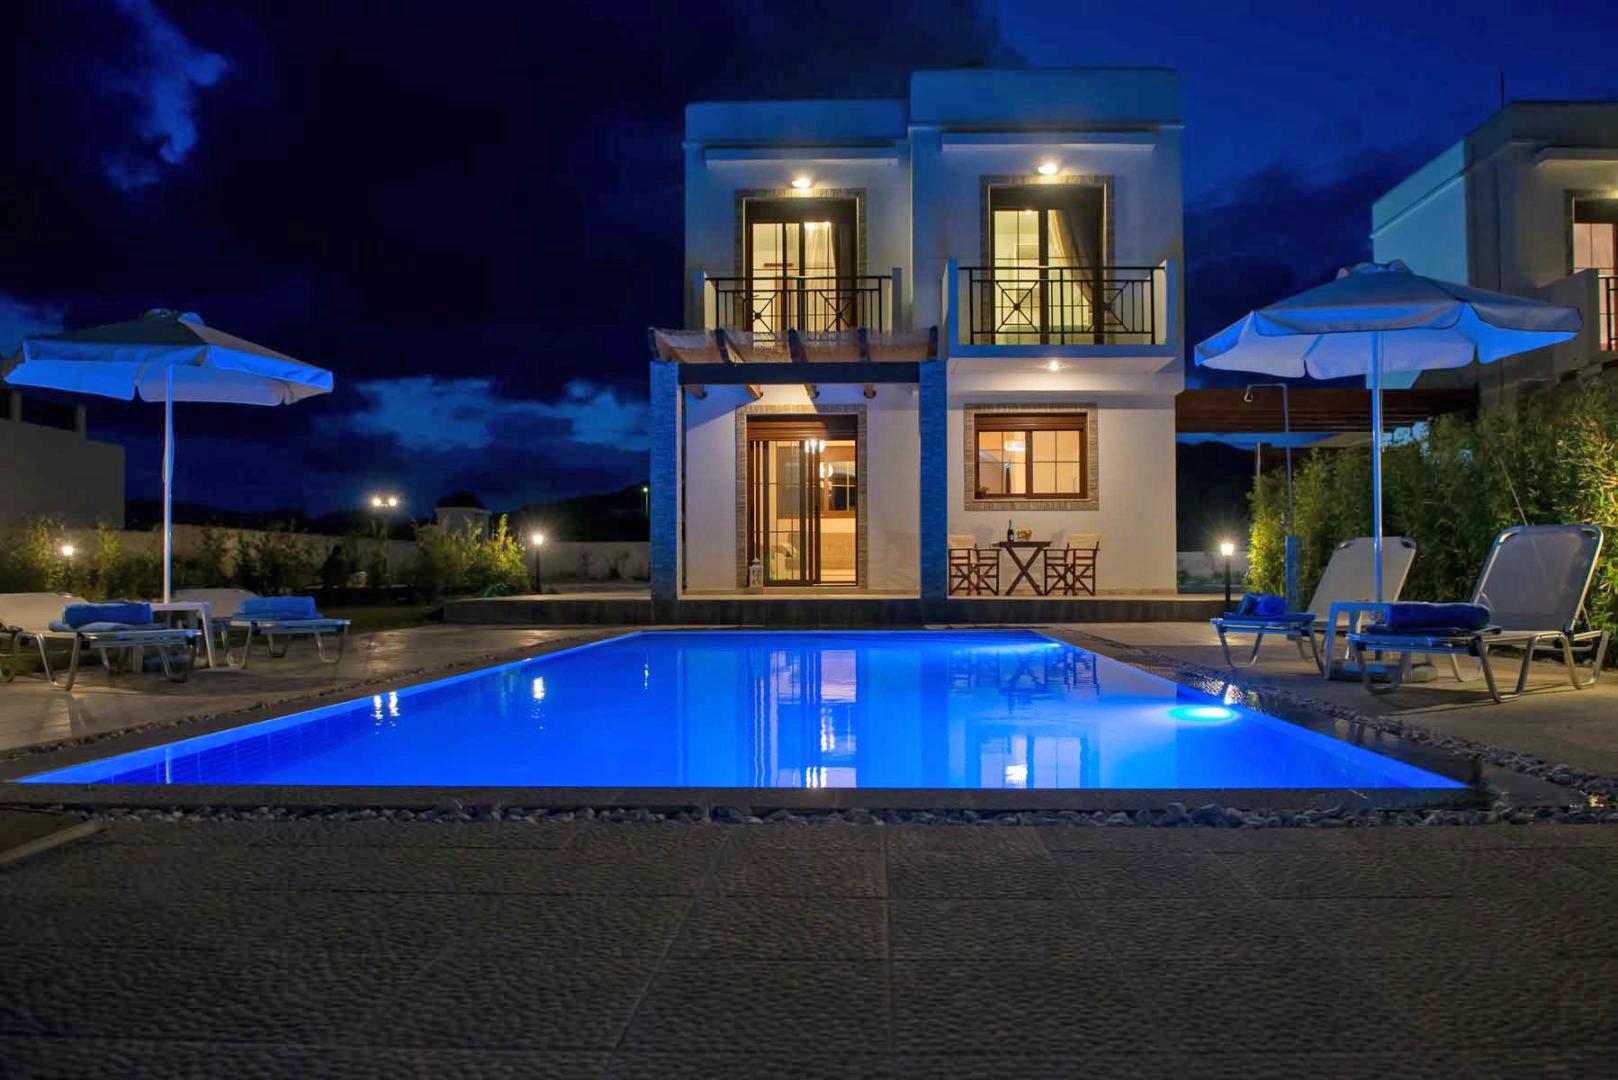 هندسة المناظر الطبيعيّة للمصايف "3 Villas By The Sea" في روذس (اليونان) (هندسة معماريّة – هندسة المناظر الطبيعيّة) - 9